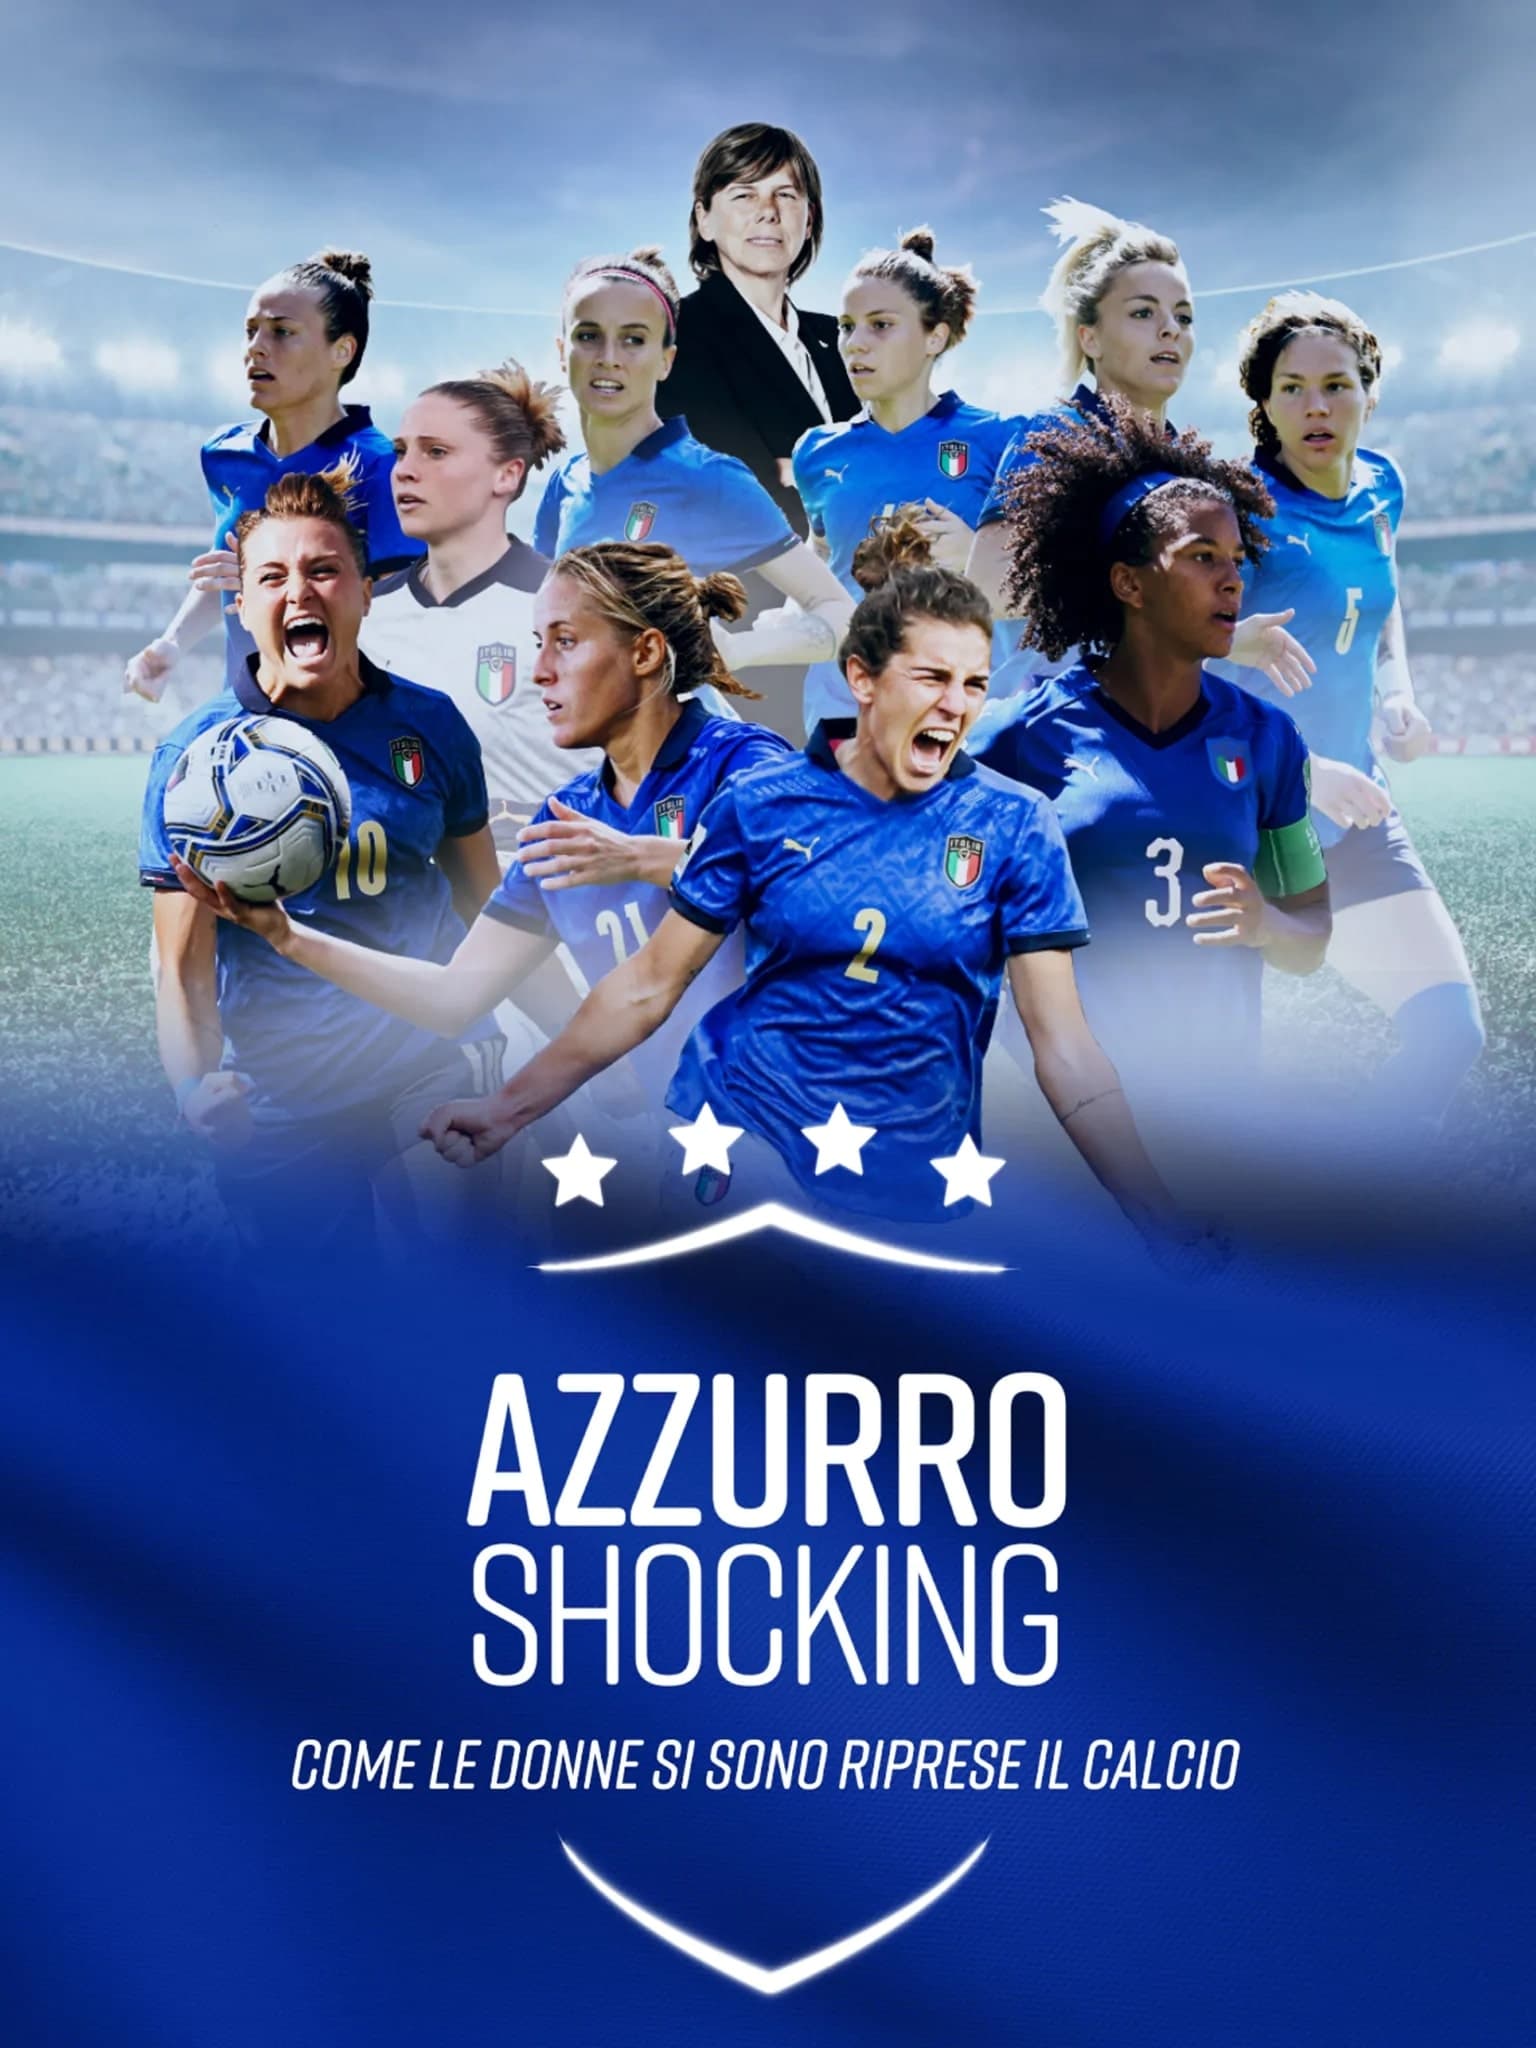 Azzurro Shocking - Come le donne si sono riprese il calcio